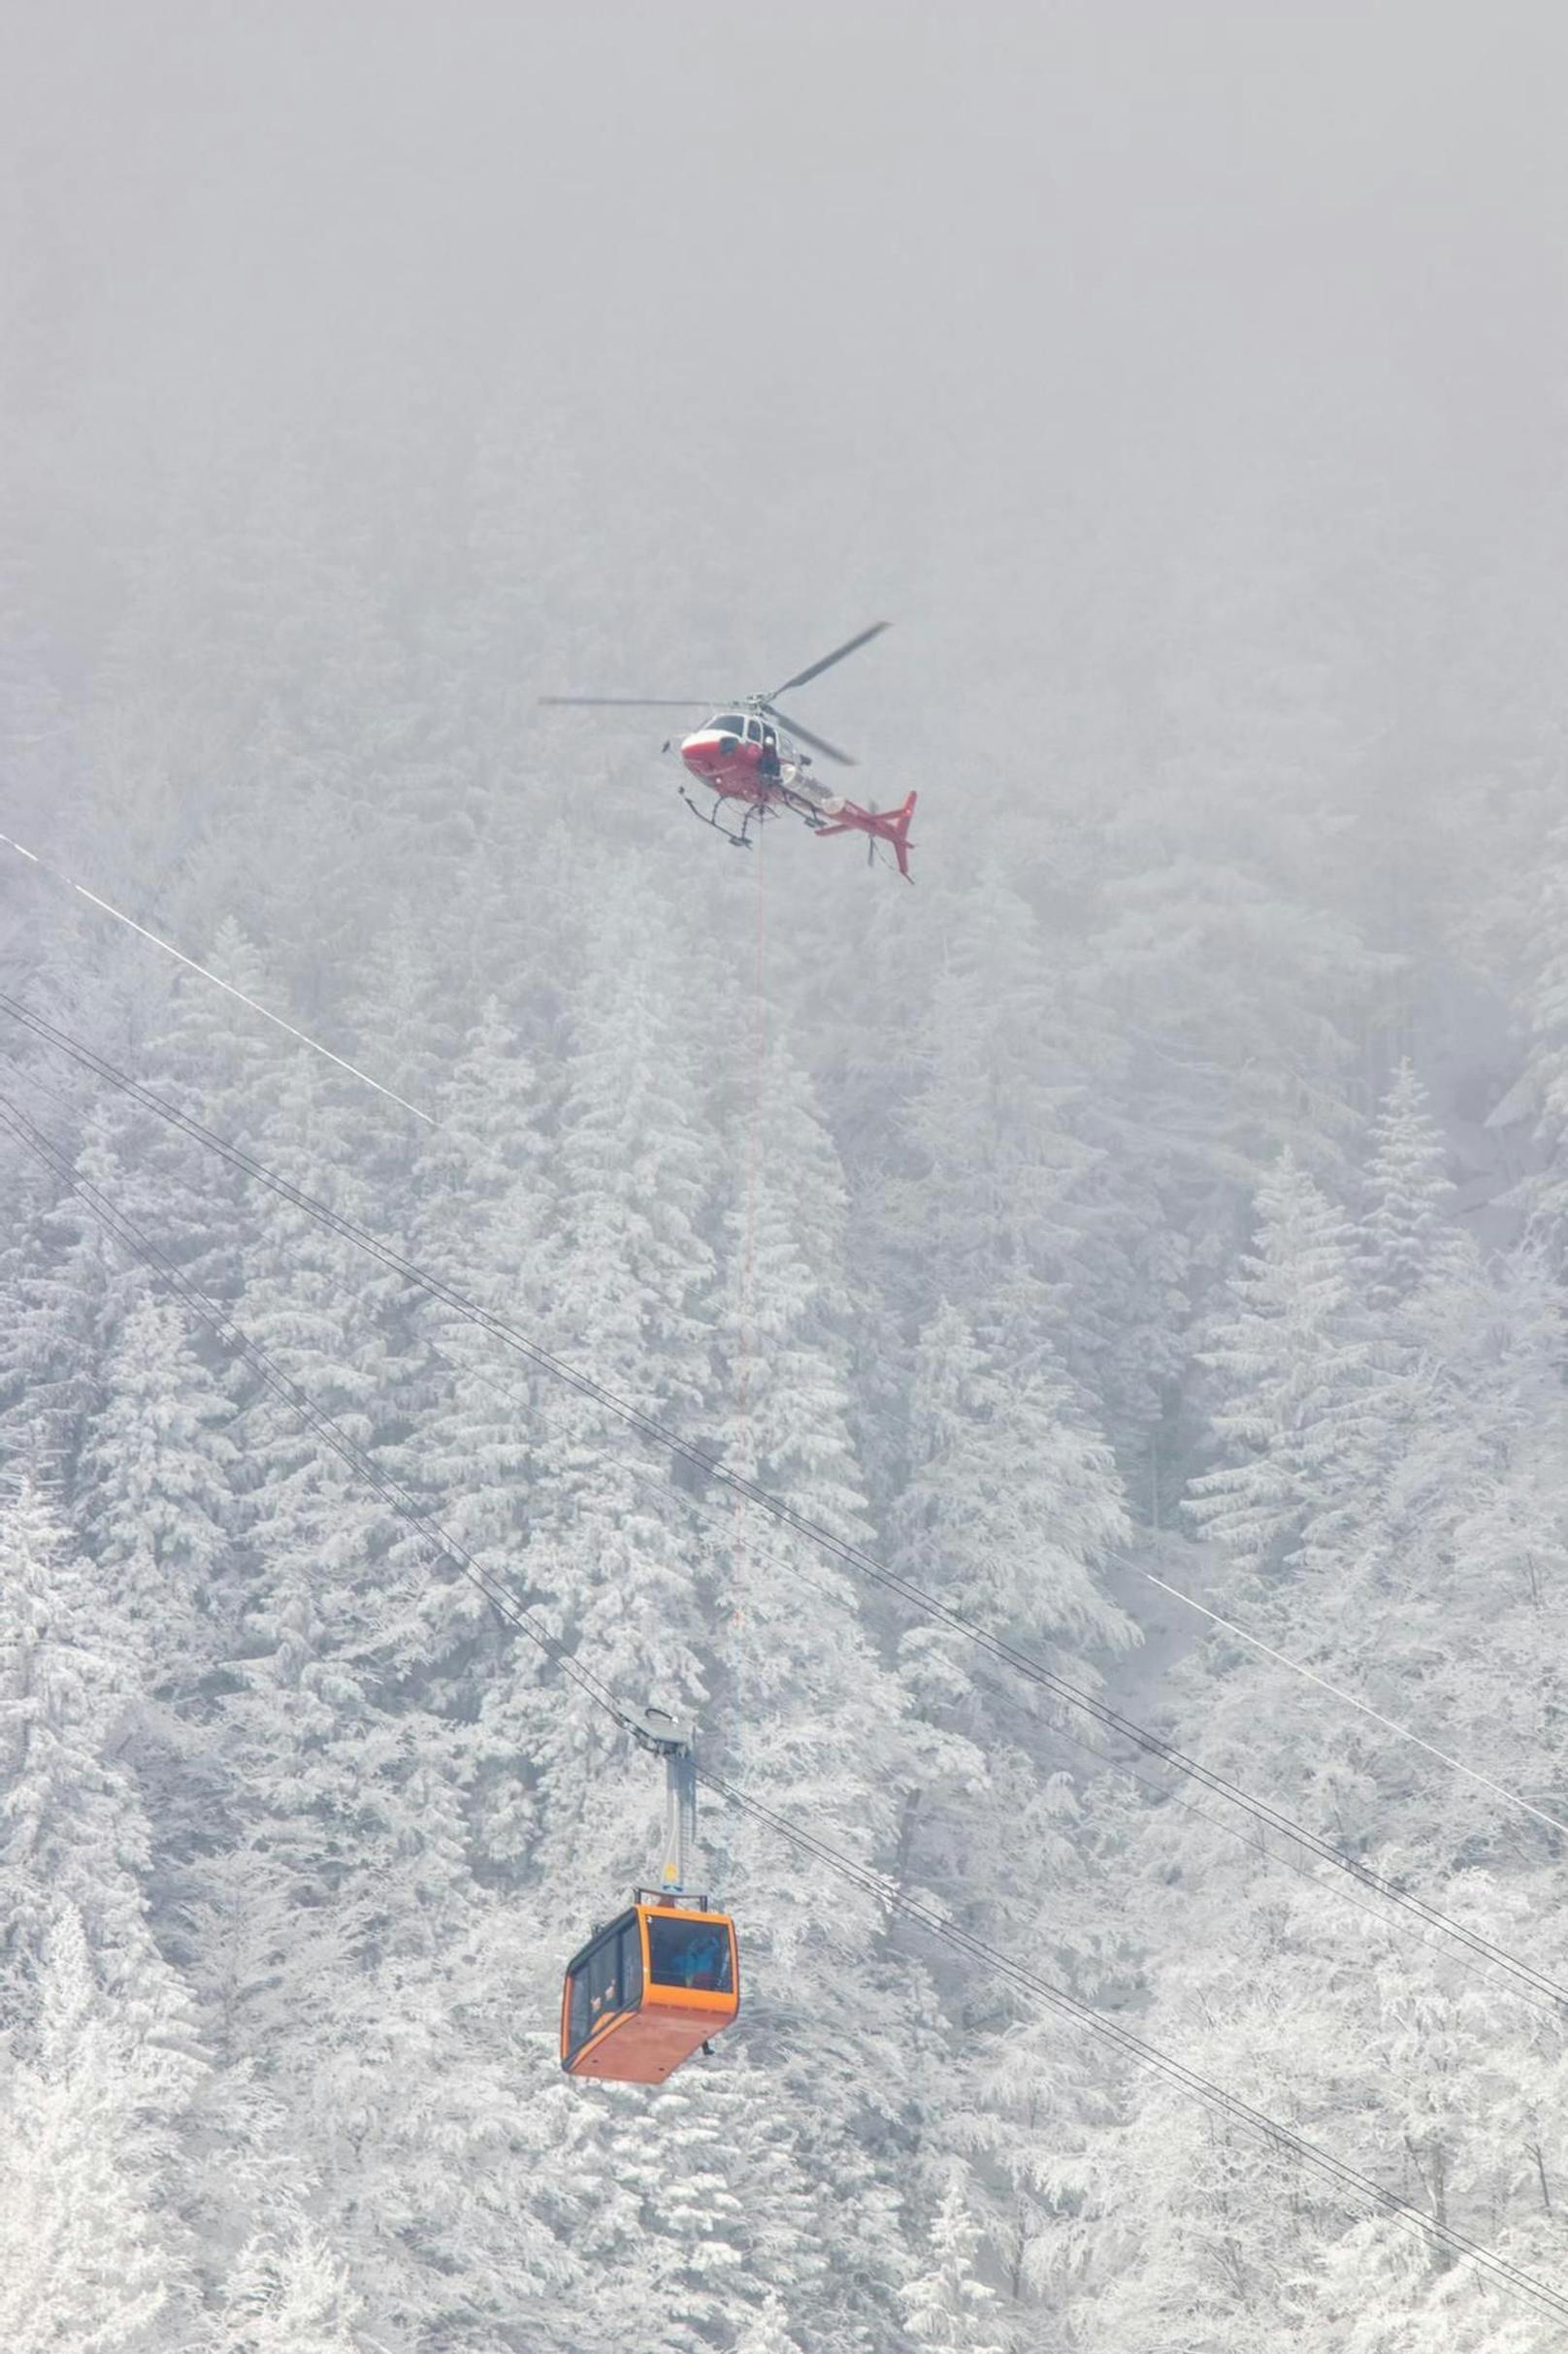 Eine Seilbahn der Lungern-Turren-Bahn im Schweizer Kanton Obwalden steckte am 14. Februar 2021 stundenlang fest. 27 Passagiere mussten per Heli evakuiert werden.